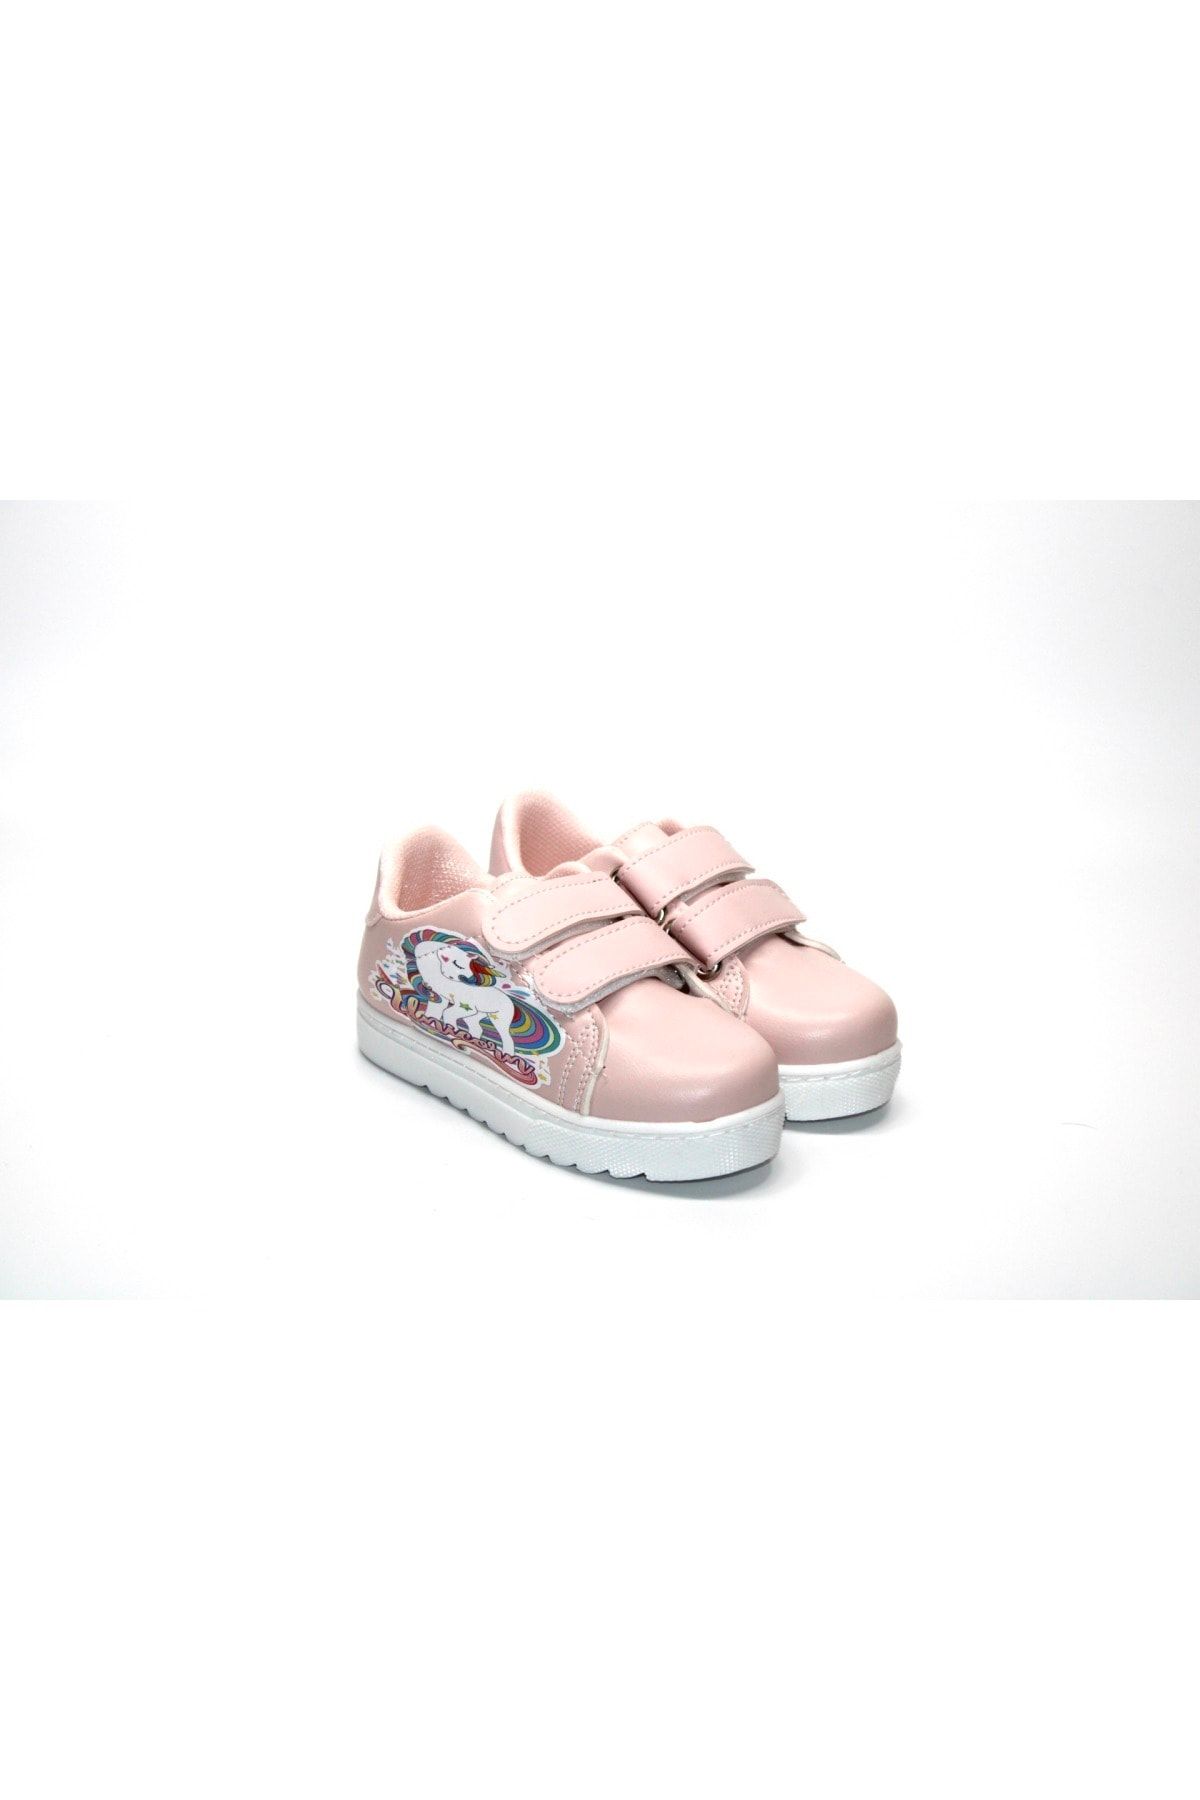 Minican Kız Çocuk Unicorn Karakterli Cırtlı Beyaz-pembe Spor Ayakkabı